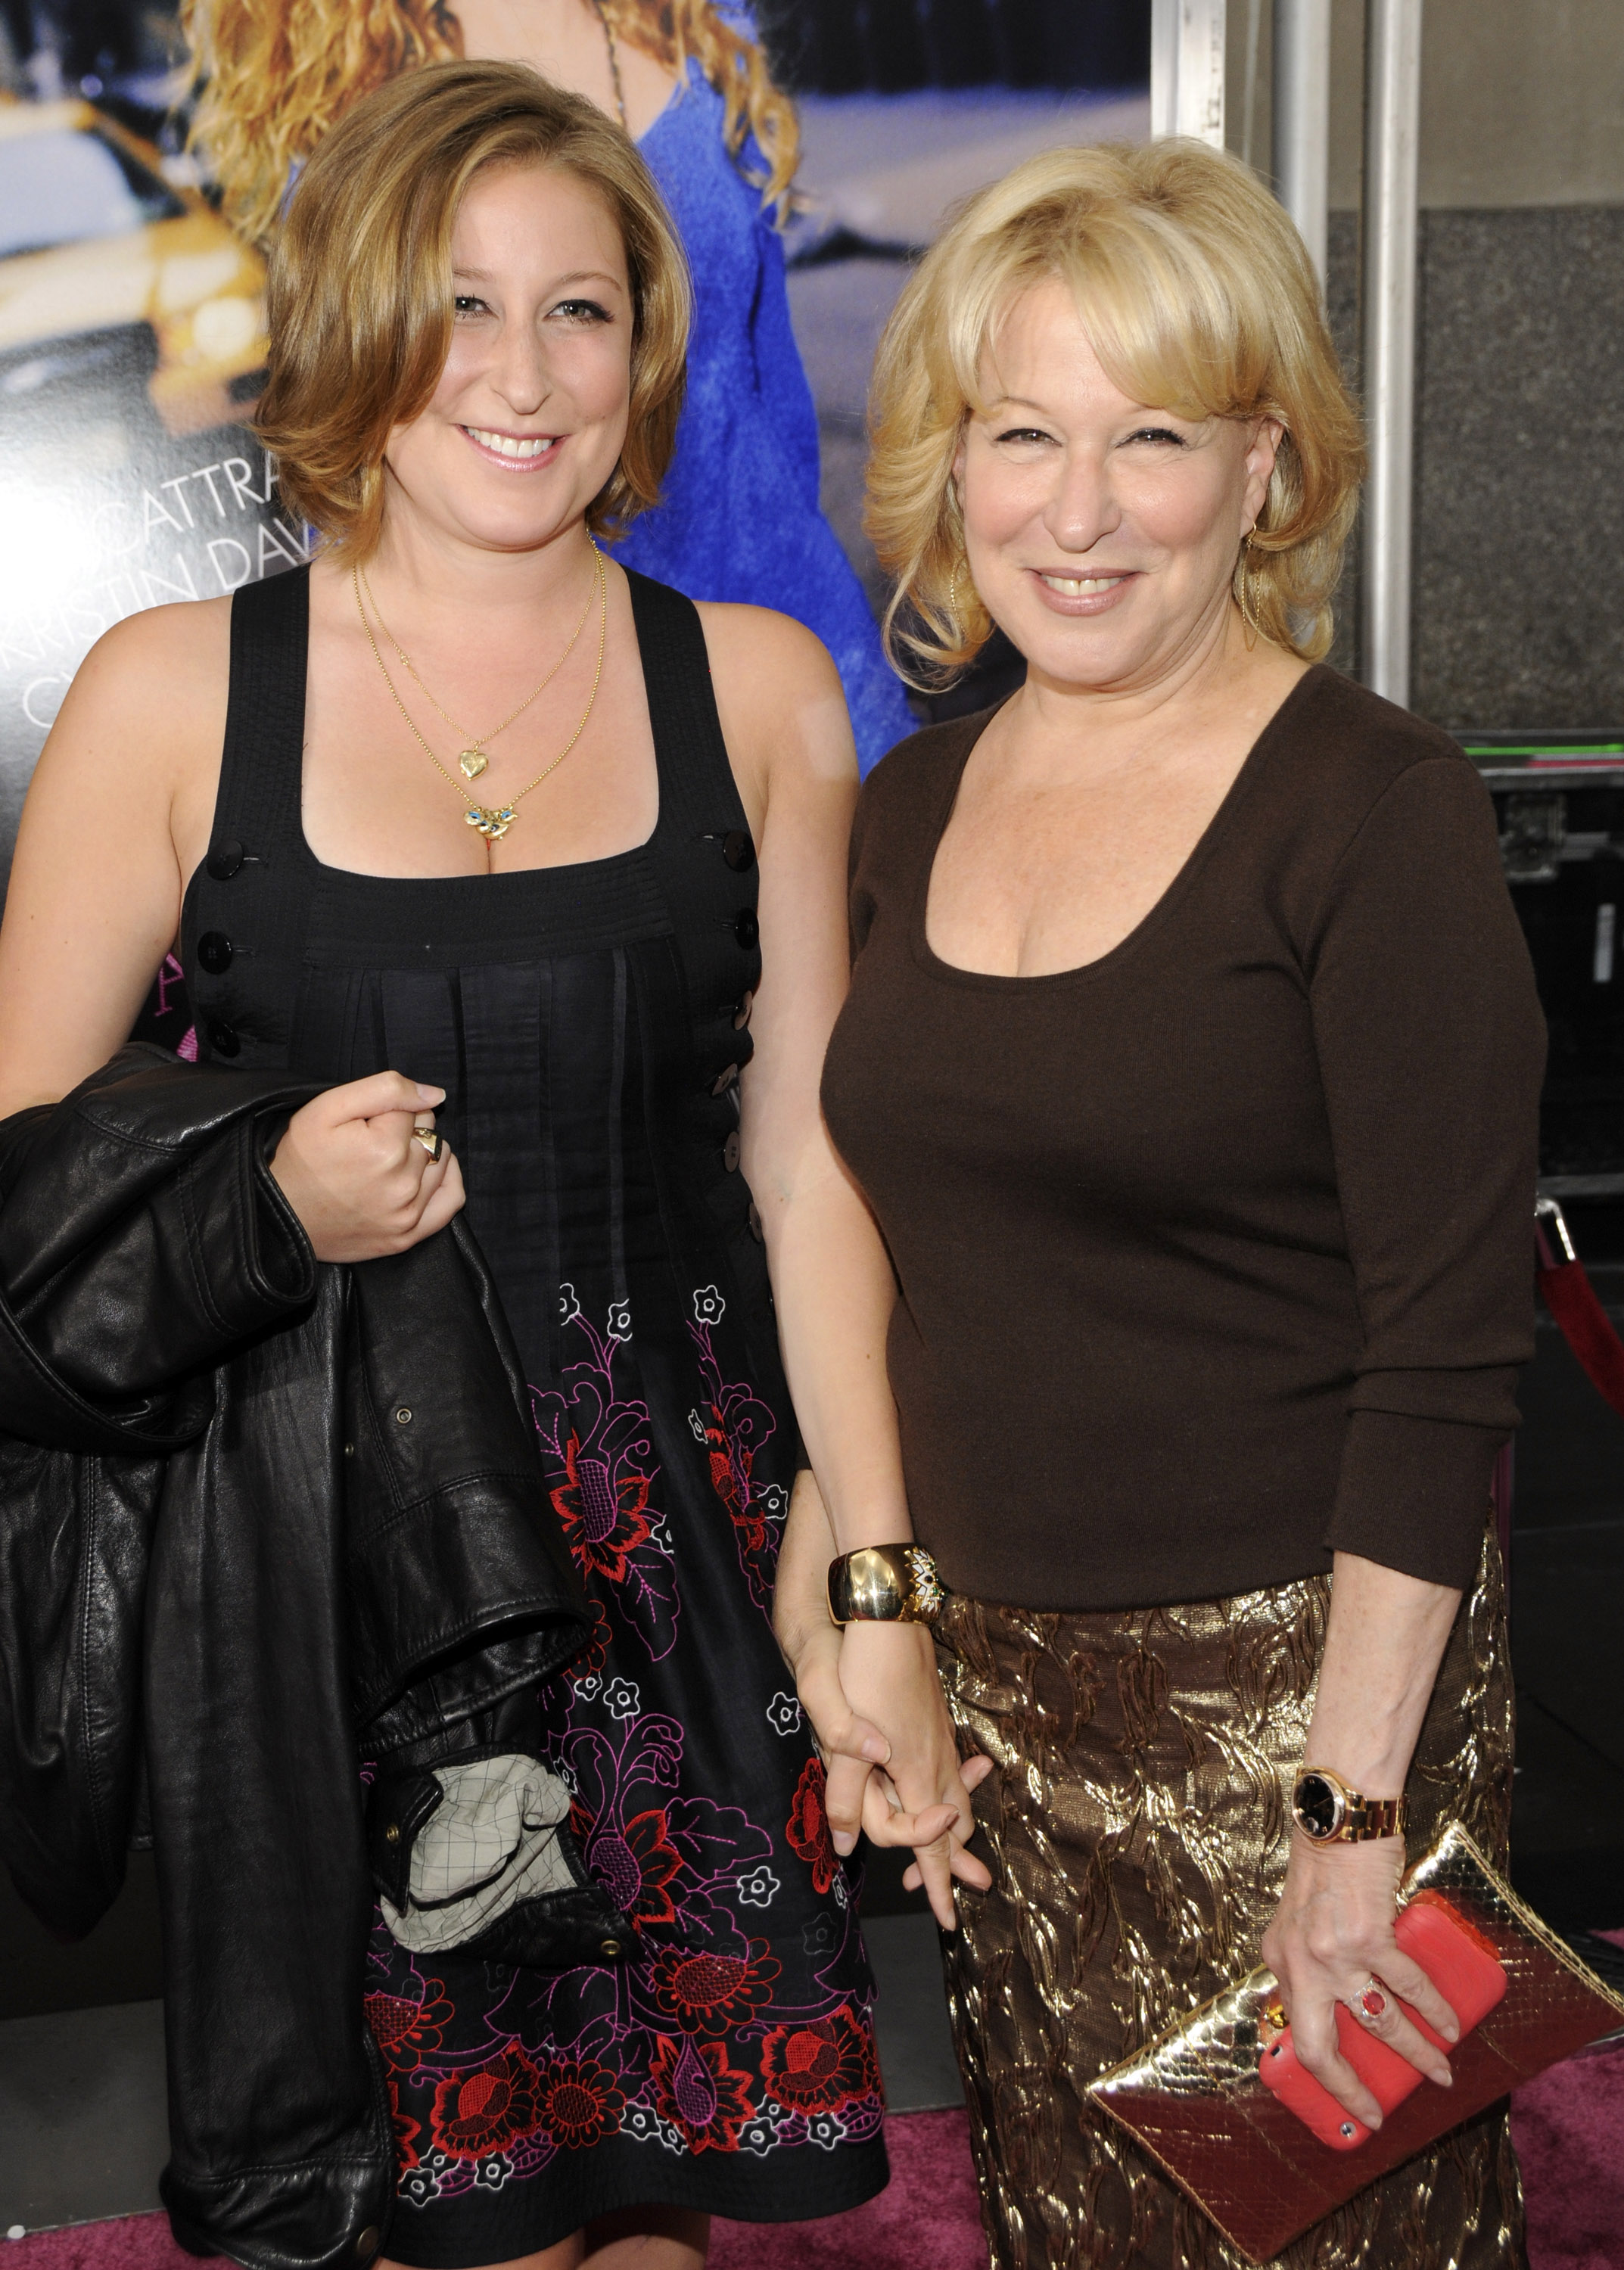 Sophie von Haselberg y su madre Bette Midler asisten al estreno de "Sex and the City: The Movie" el 27 de mayo de 2008 en Nueva York | Foto: Getty Images